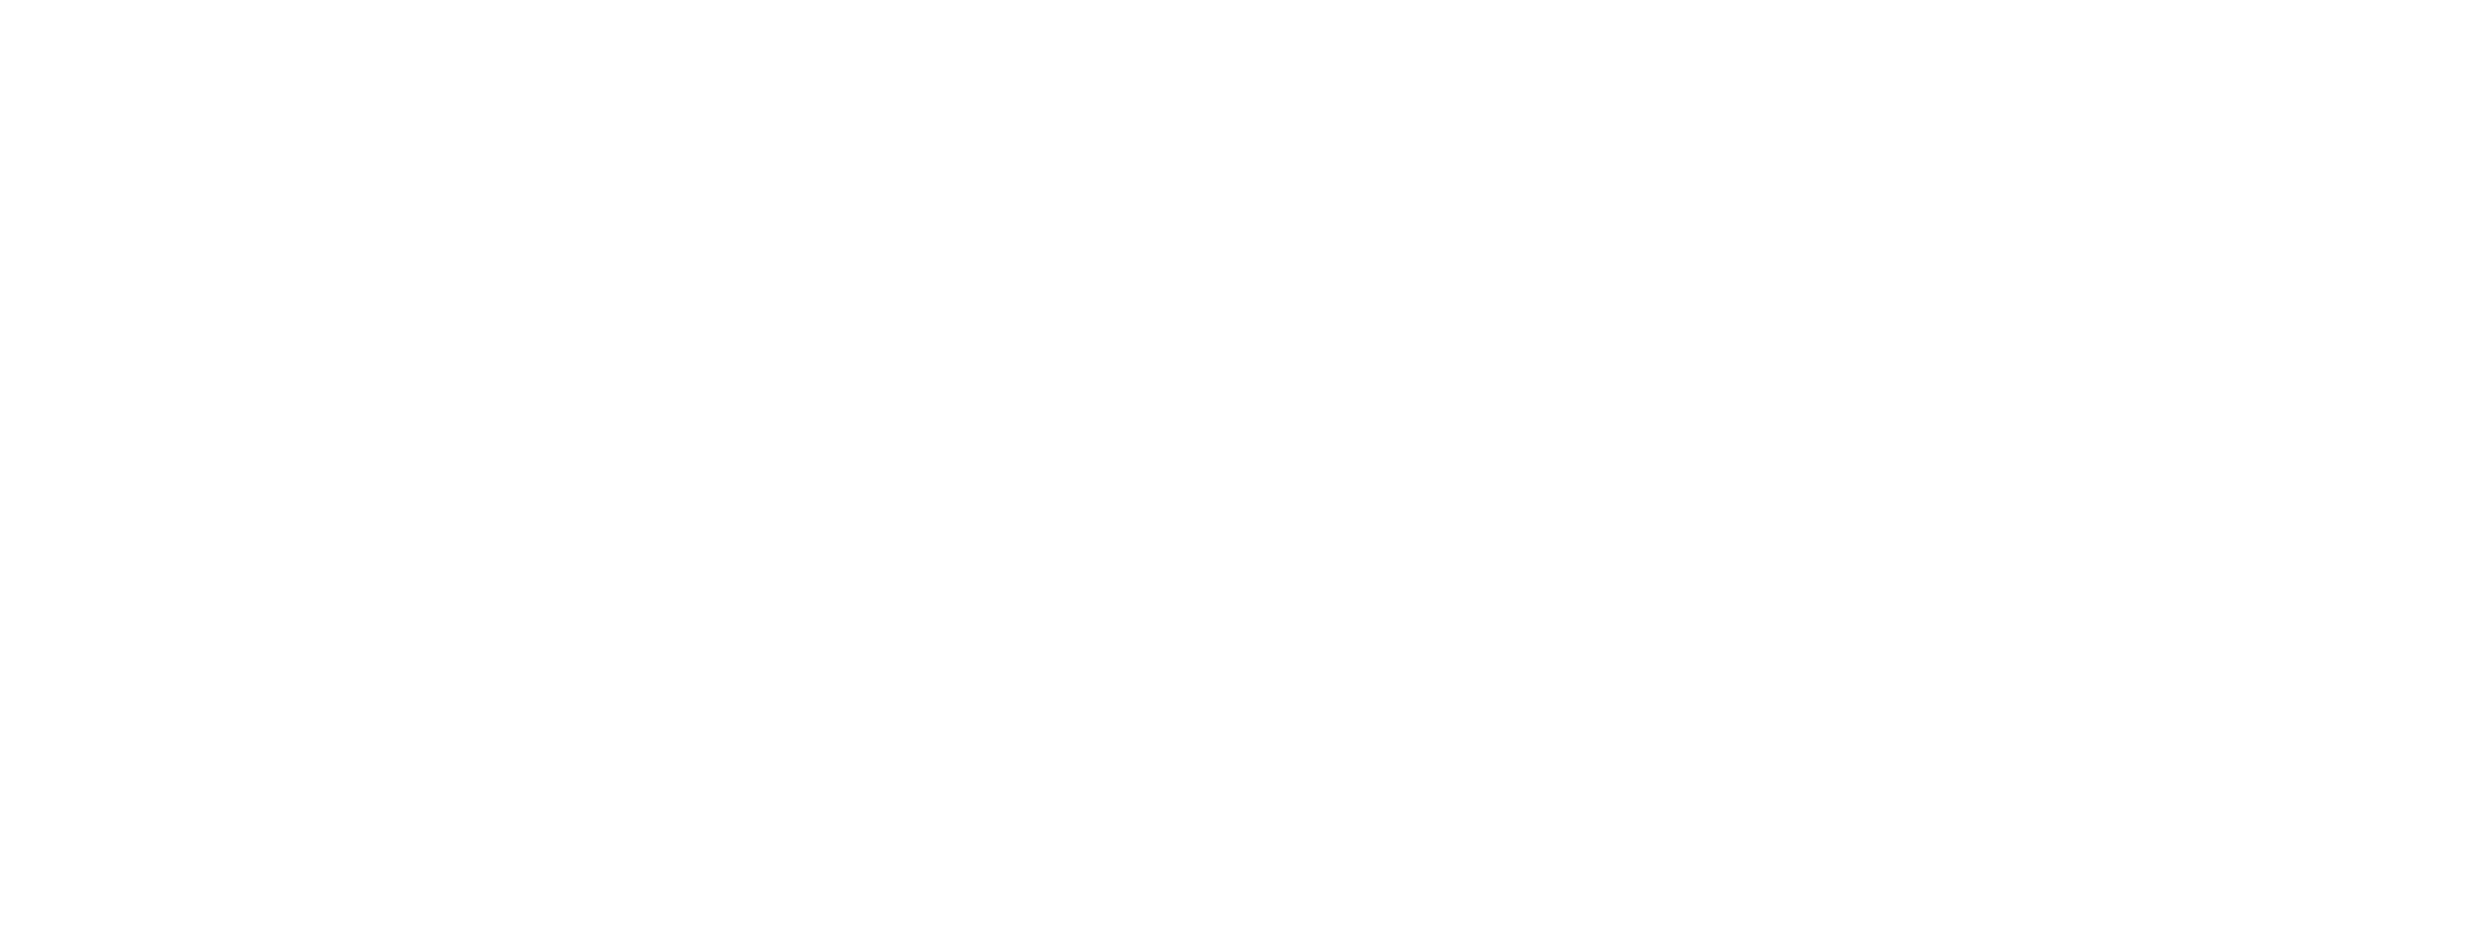 kitconcept-extended_White